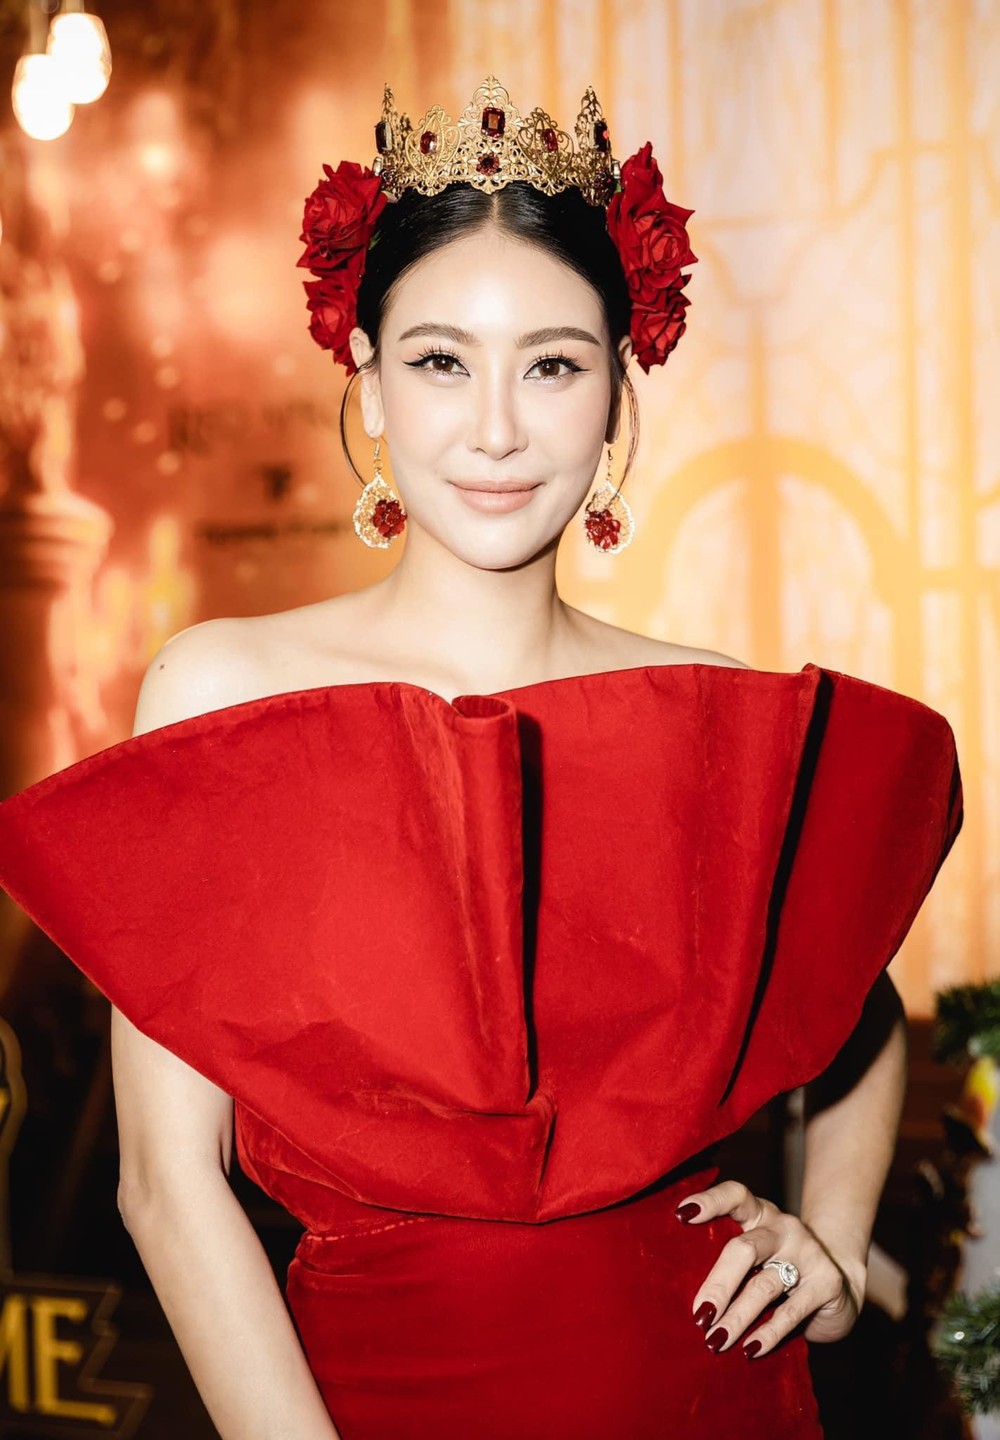 Hoa hậu Hà Kiều Anh ở tuổi 45: Từ nhan sắc đến vóc dáng đỉnh cao khiến đàn em ngưỡng mộ - Ảnh 12.